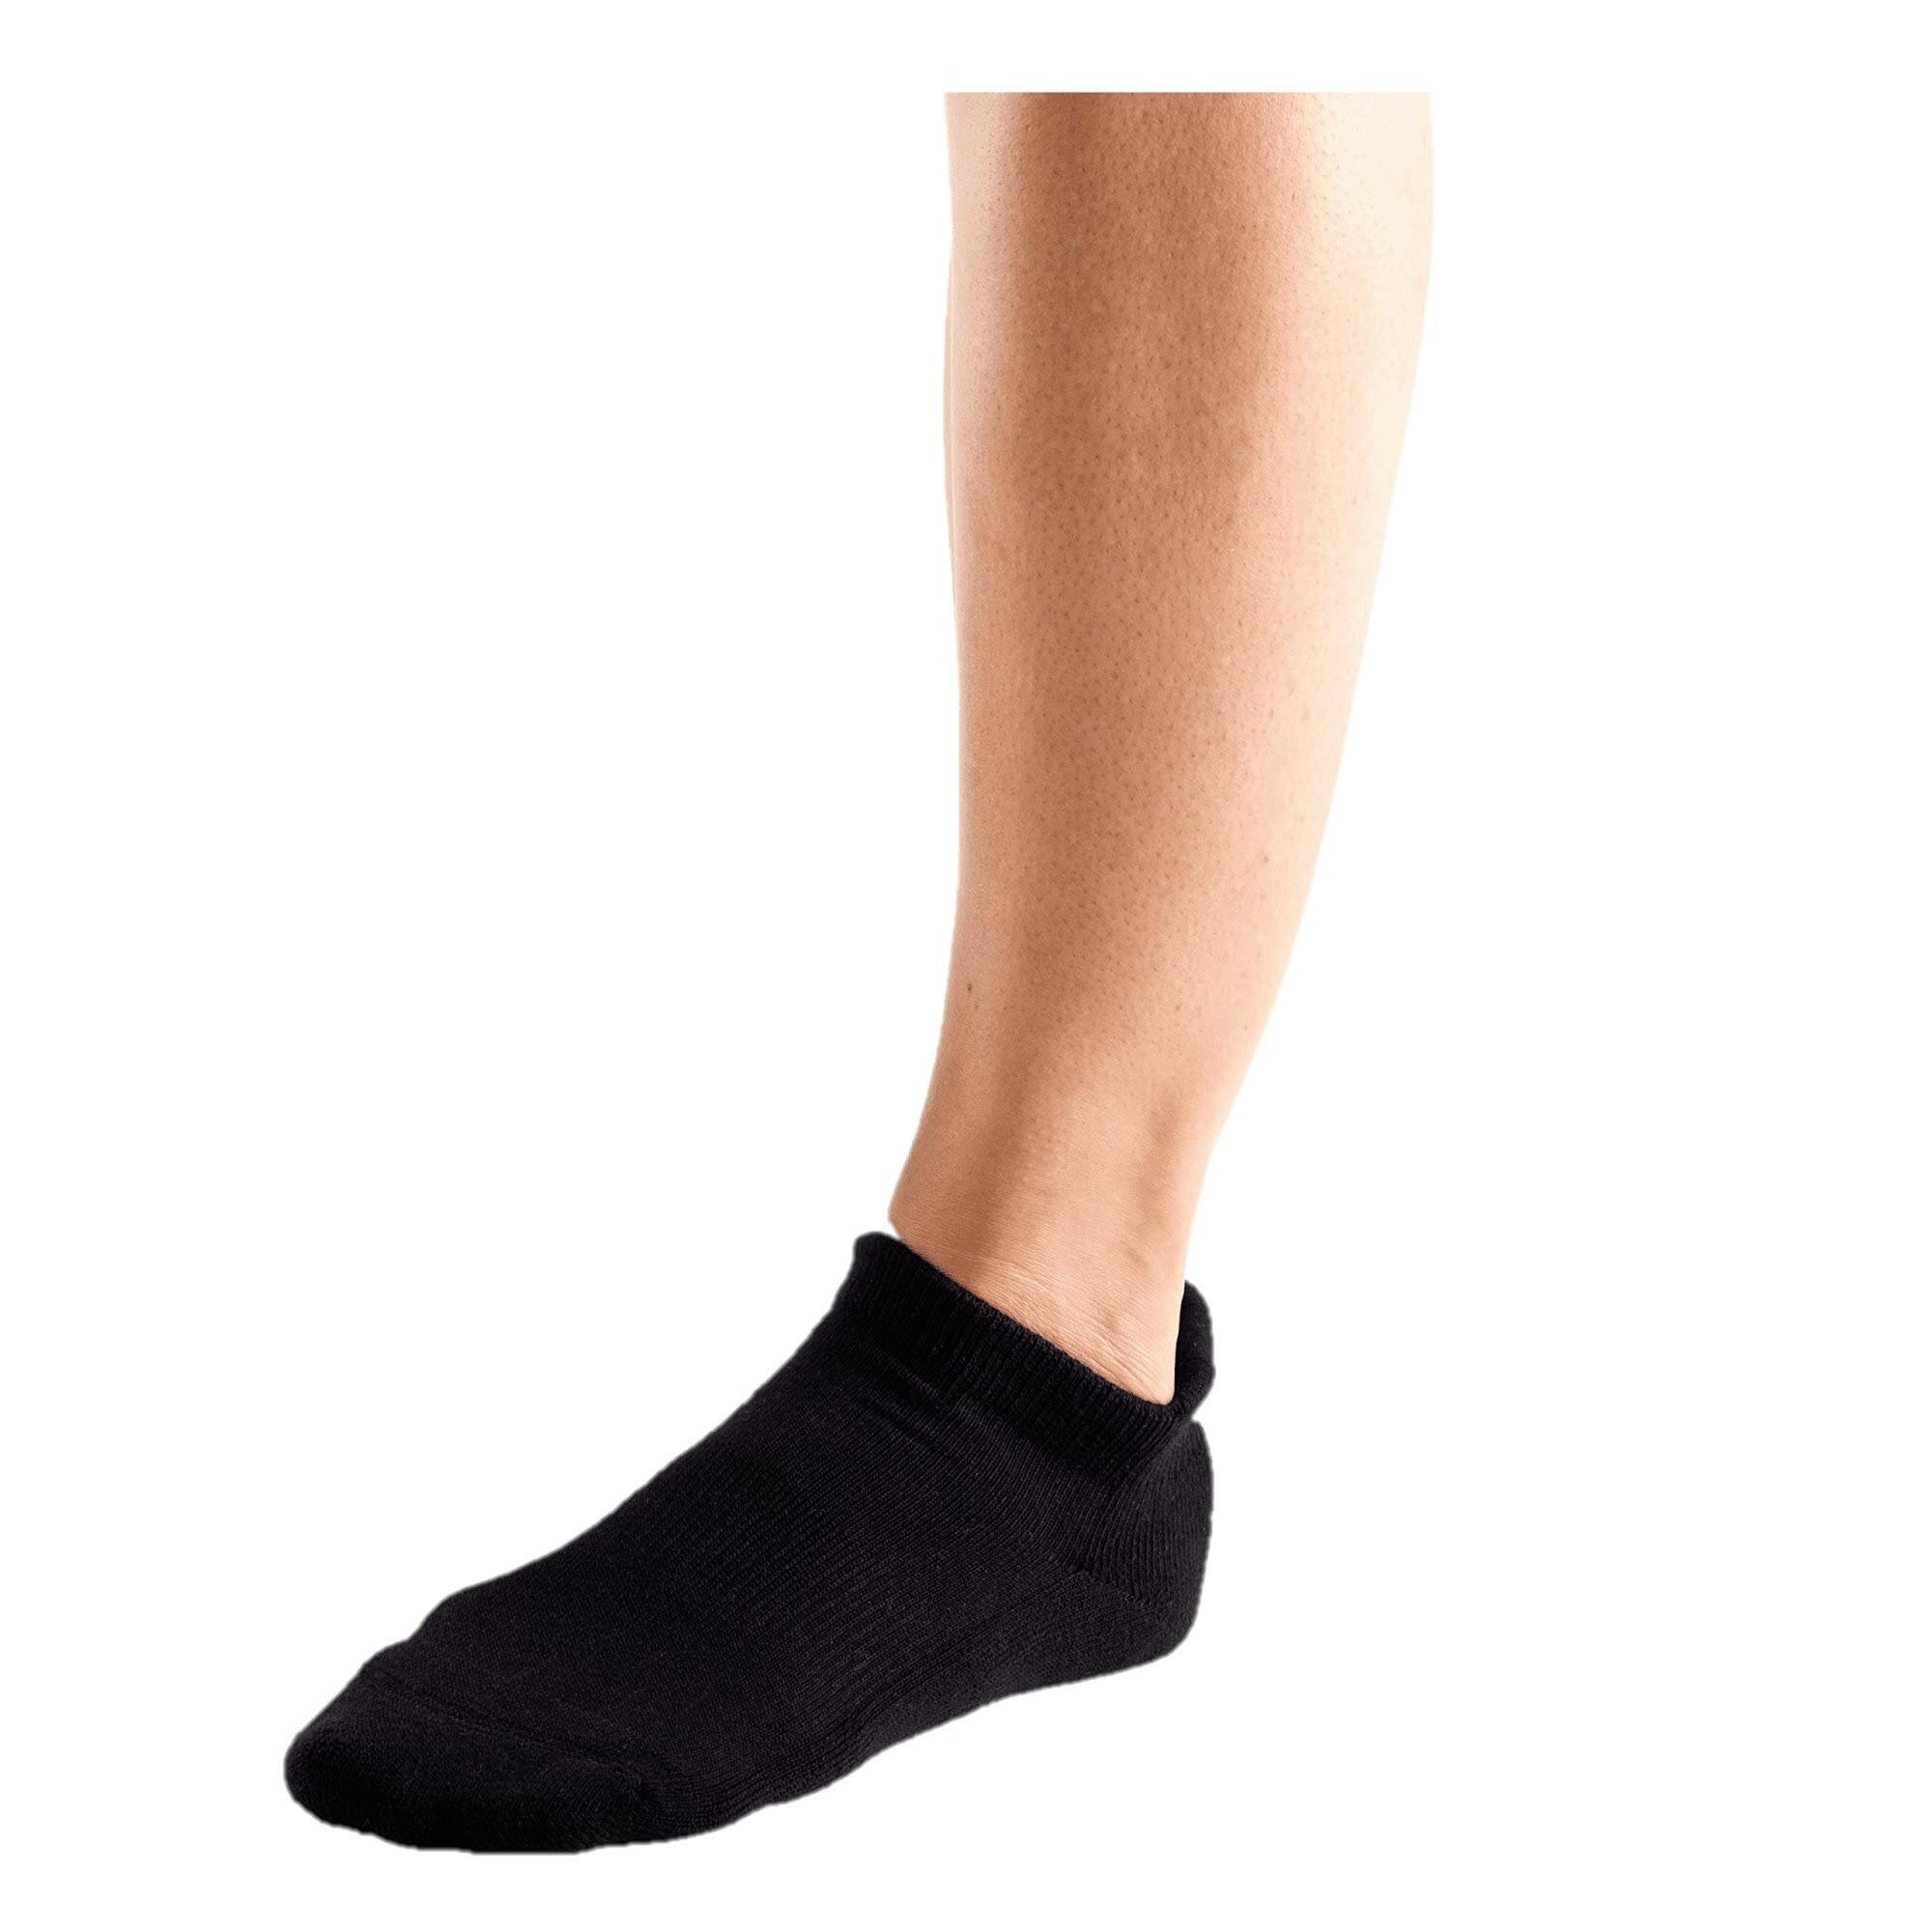 FITNESS-MAD Unisex Adult Savvy Ankle Socks (Black)